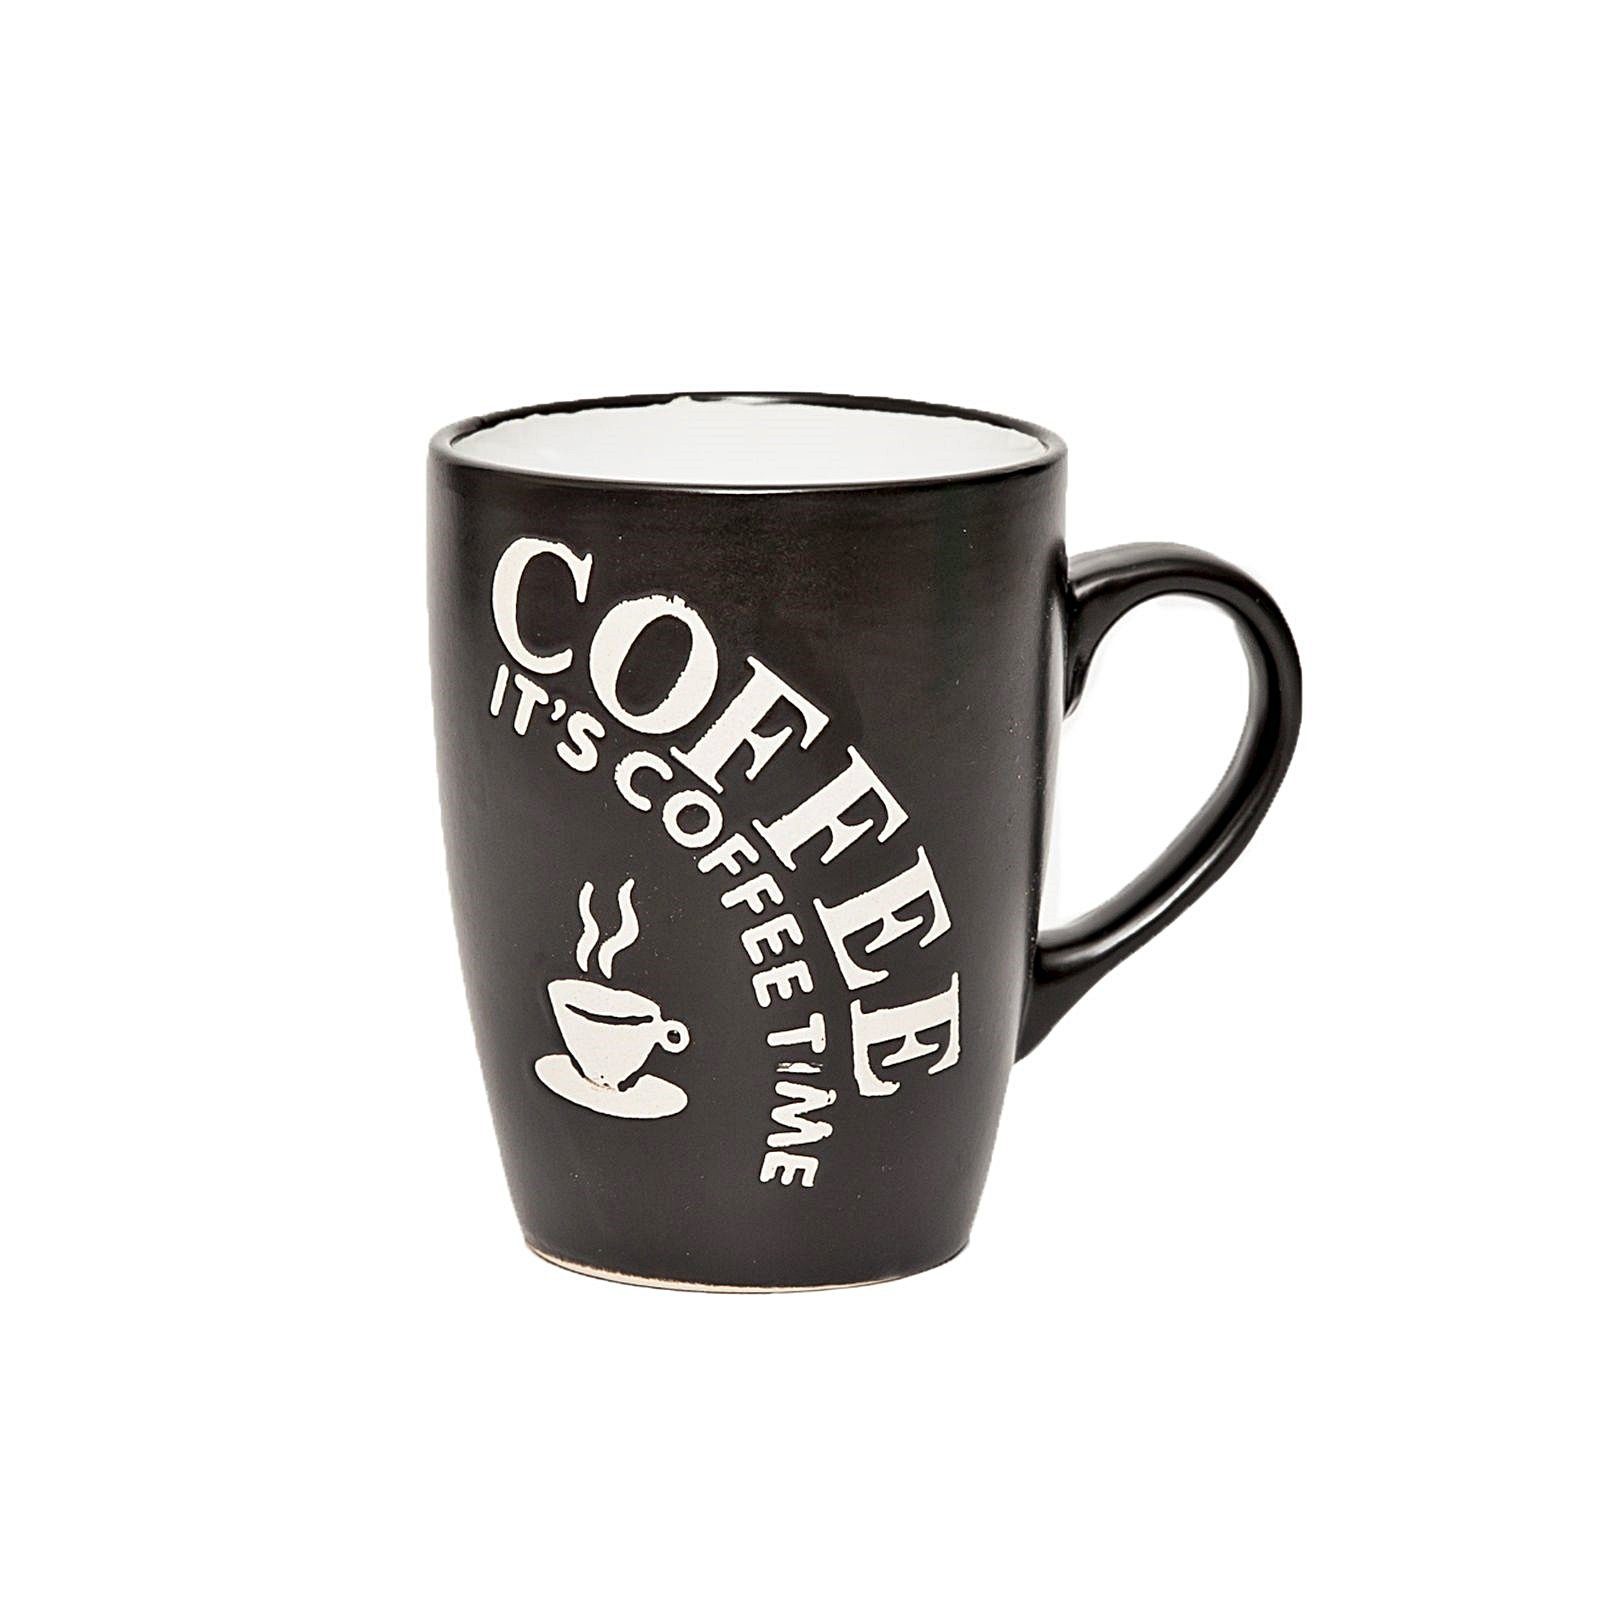 6-teilig Keramik, Kaffeepott, Kaffeetassen Kaffeetasse Tasse astor24 Kaffeebecher